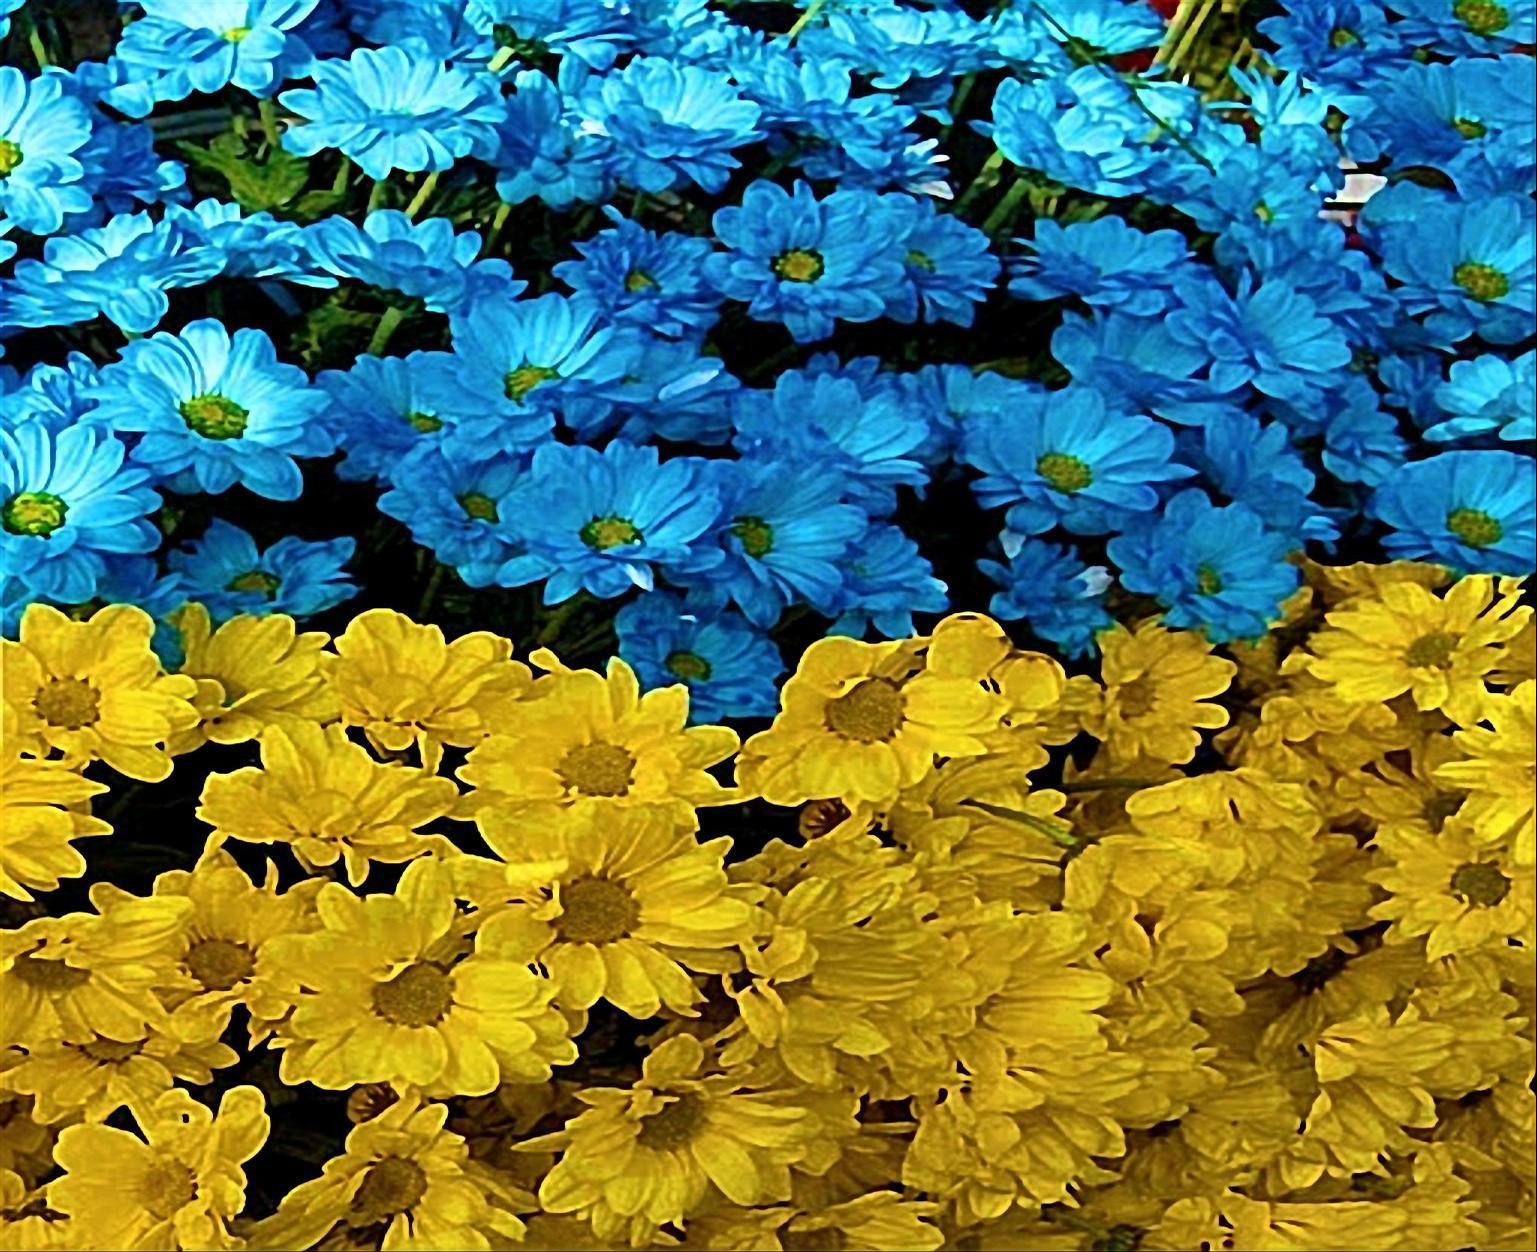 UKRAINE FLOWER FLAG WALLPAPER - Wallpaper